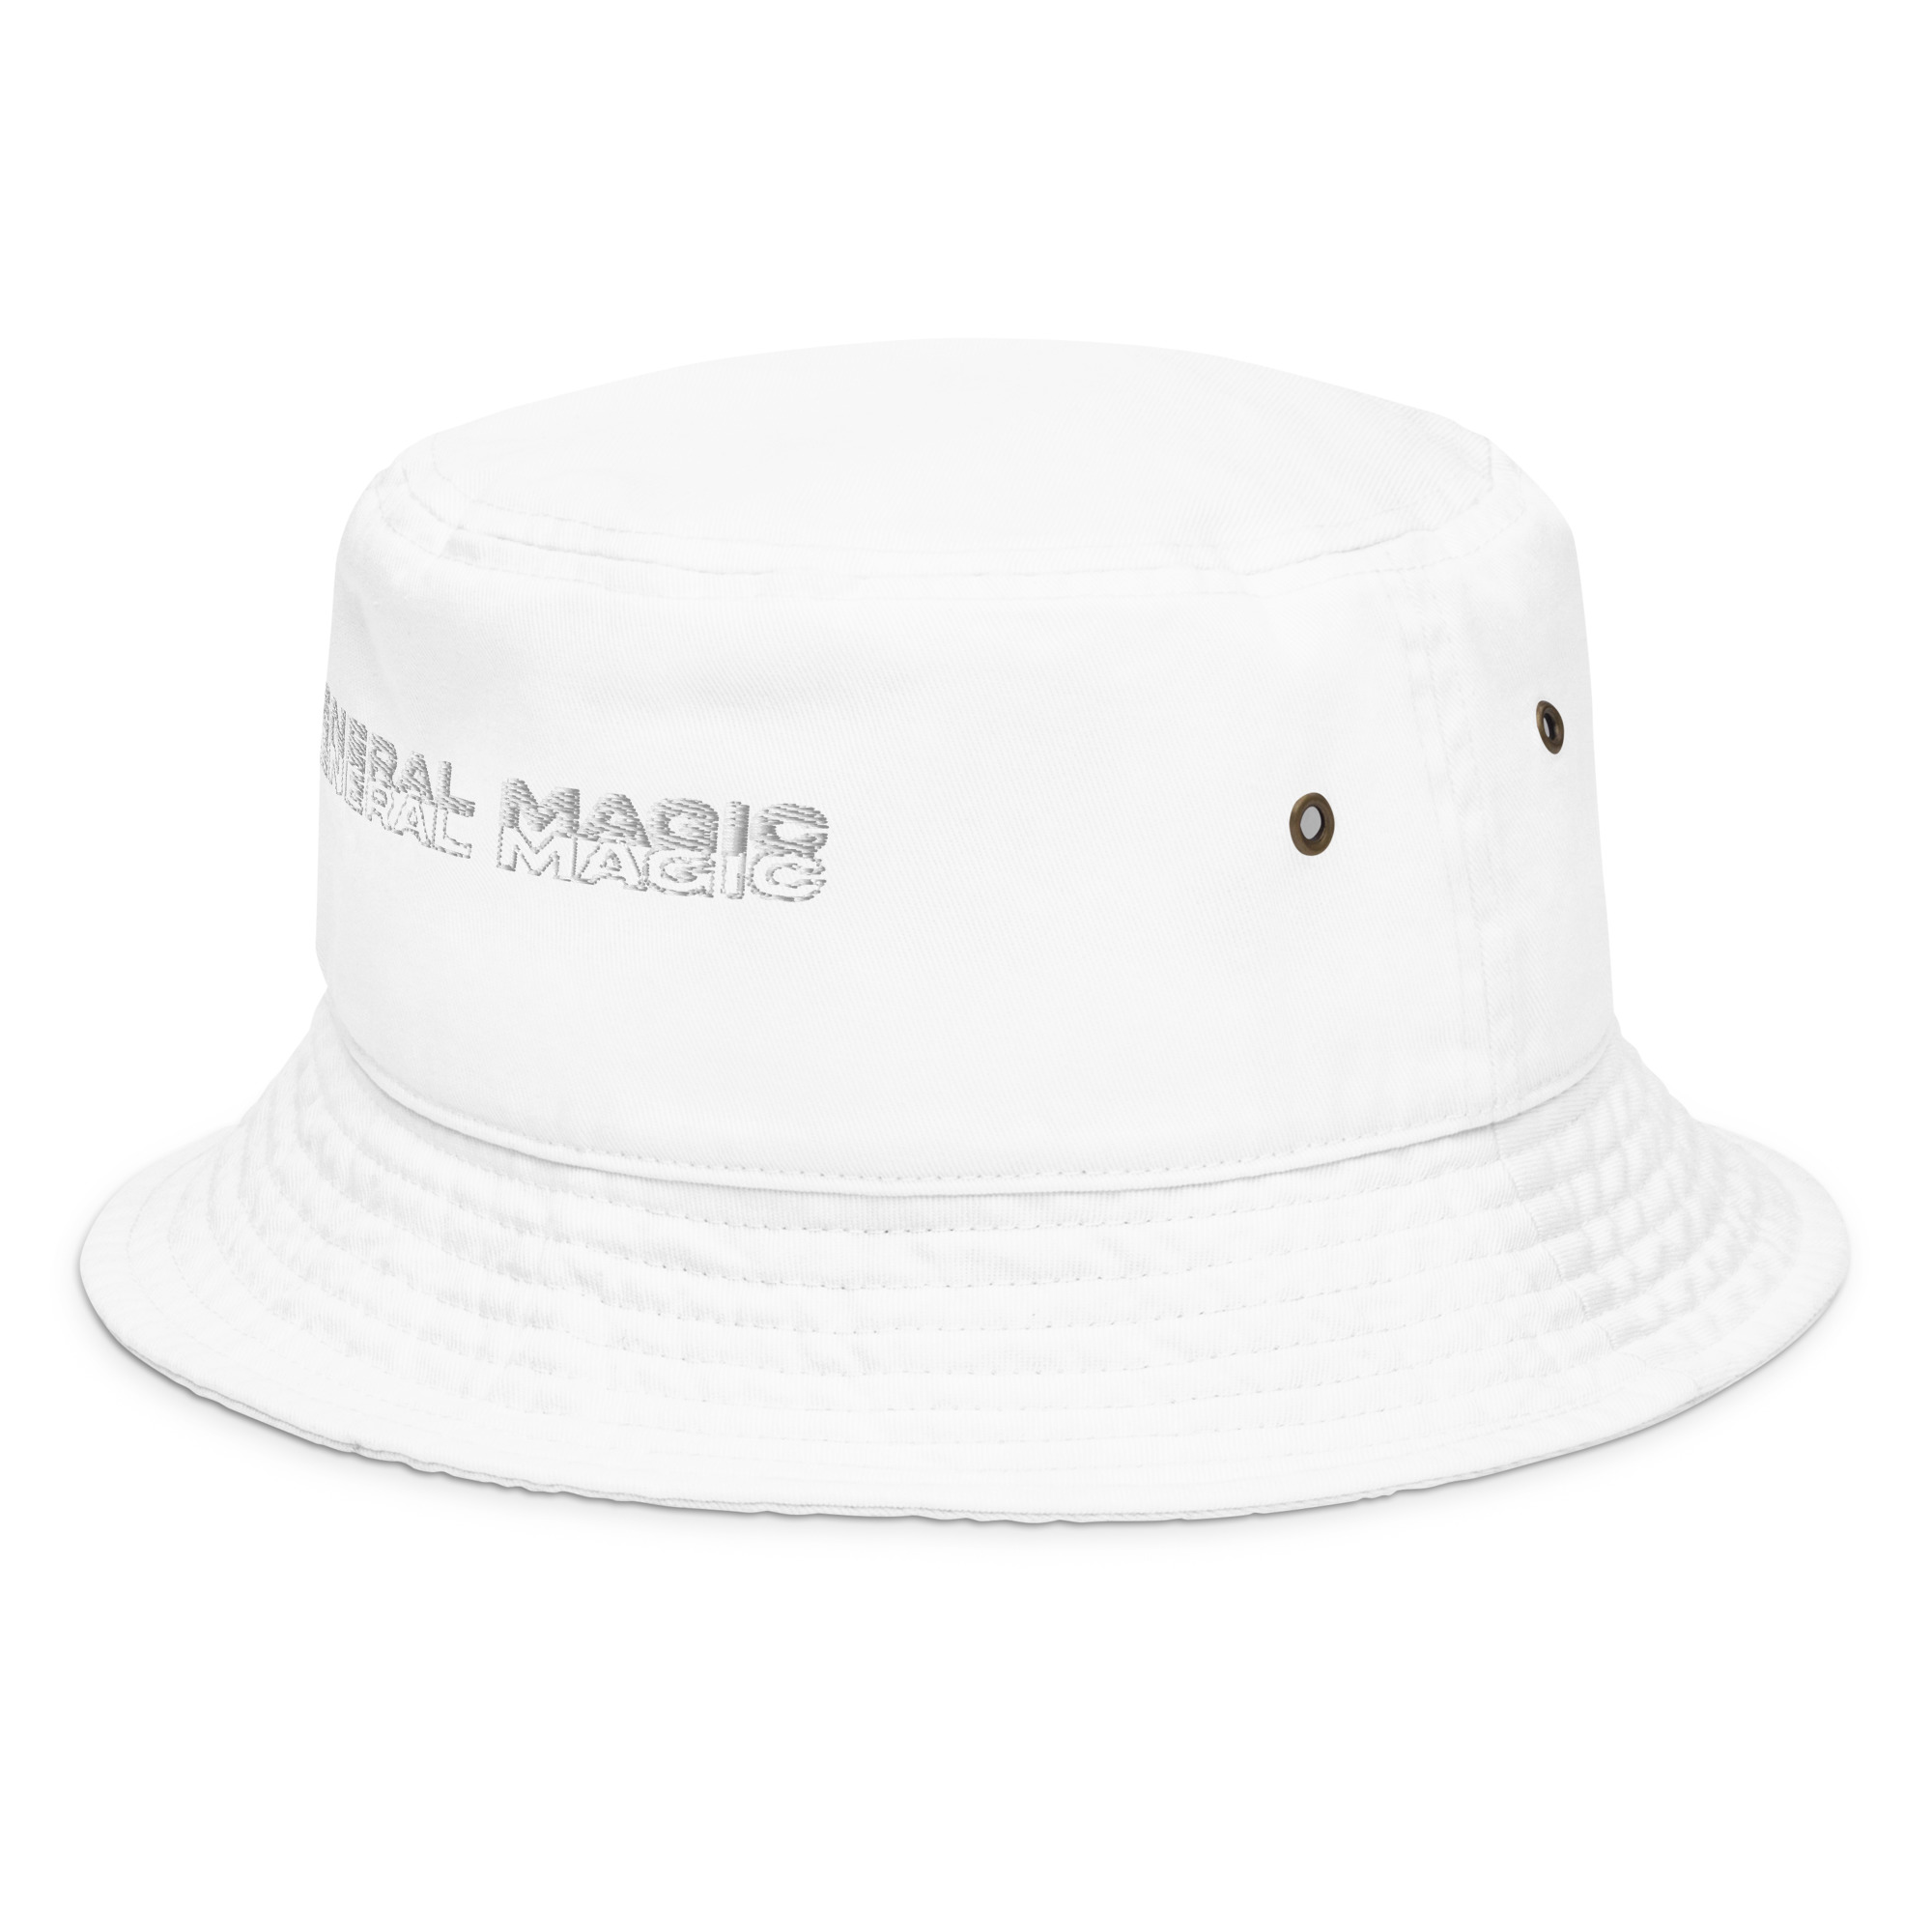 fashion-bucket-hat-white-left-front-6498592442aca.jpg